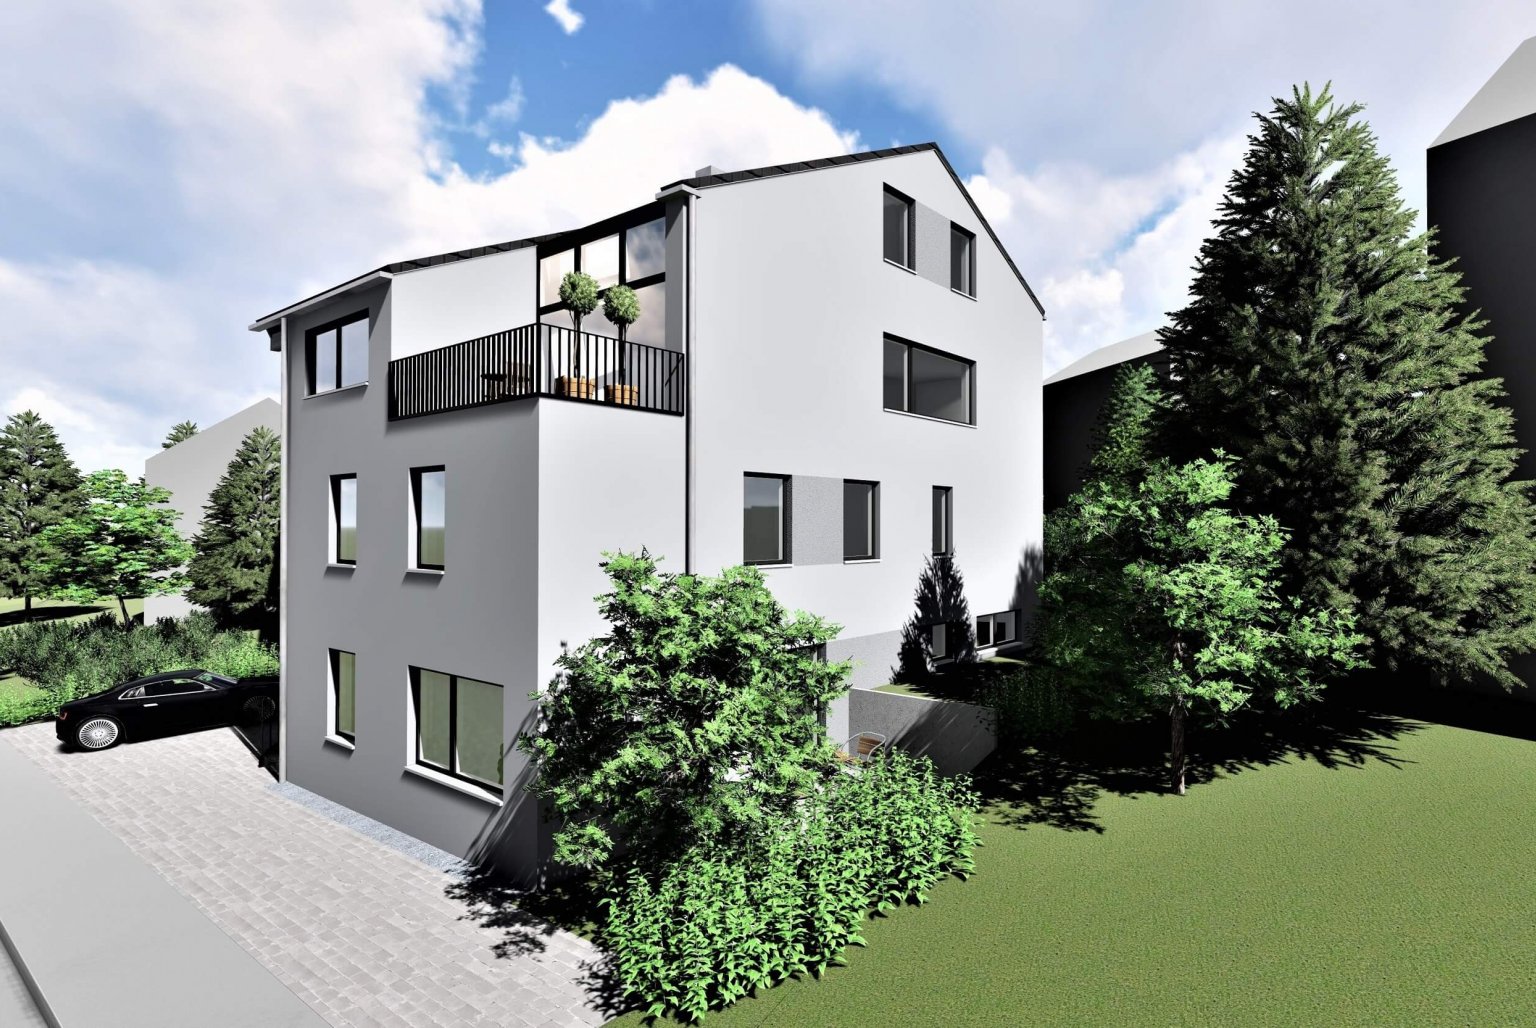 Neubau eines Dreifamilienhauses in Gummersbach- Strombach Effizienzhausstandard 55